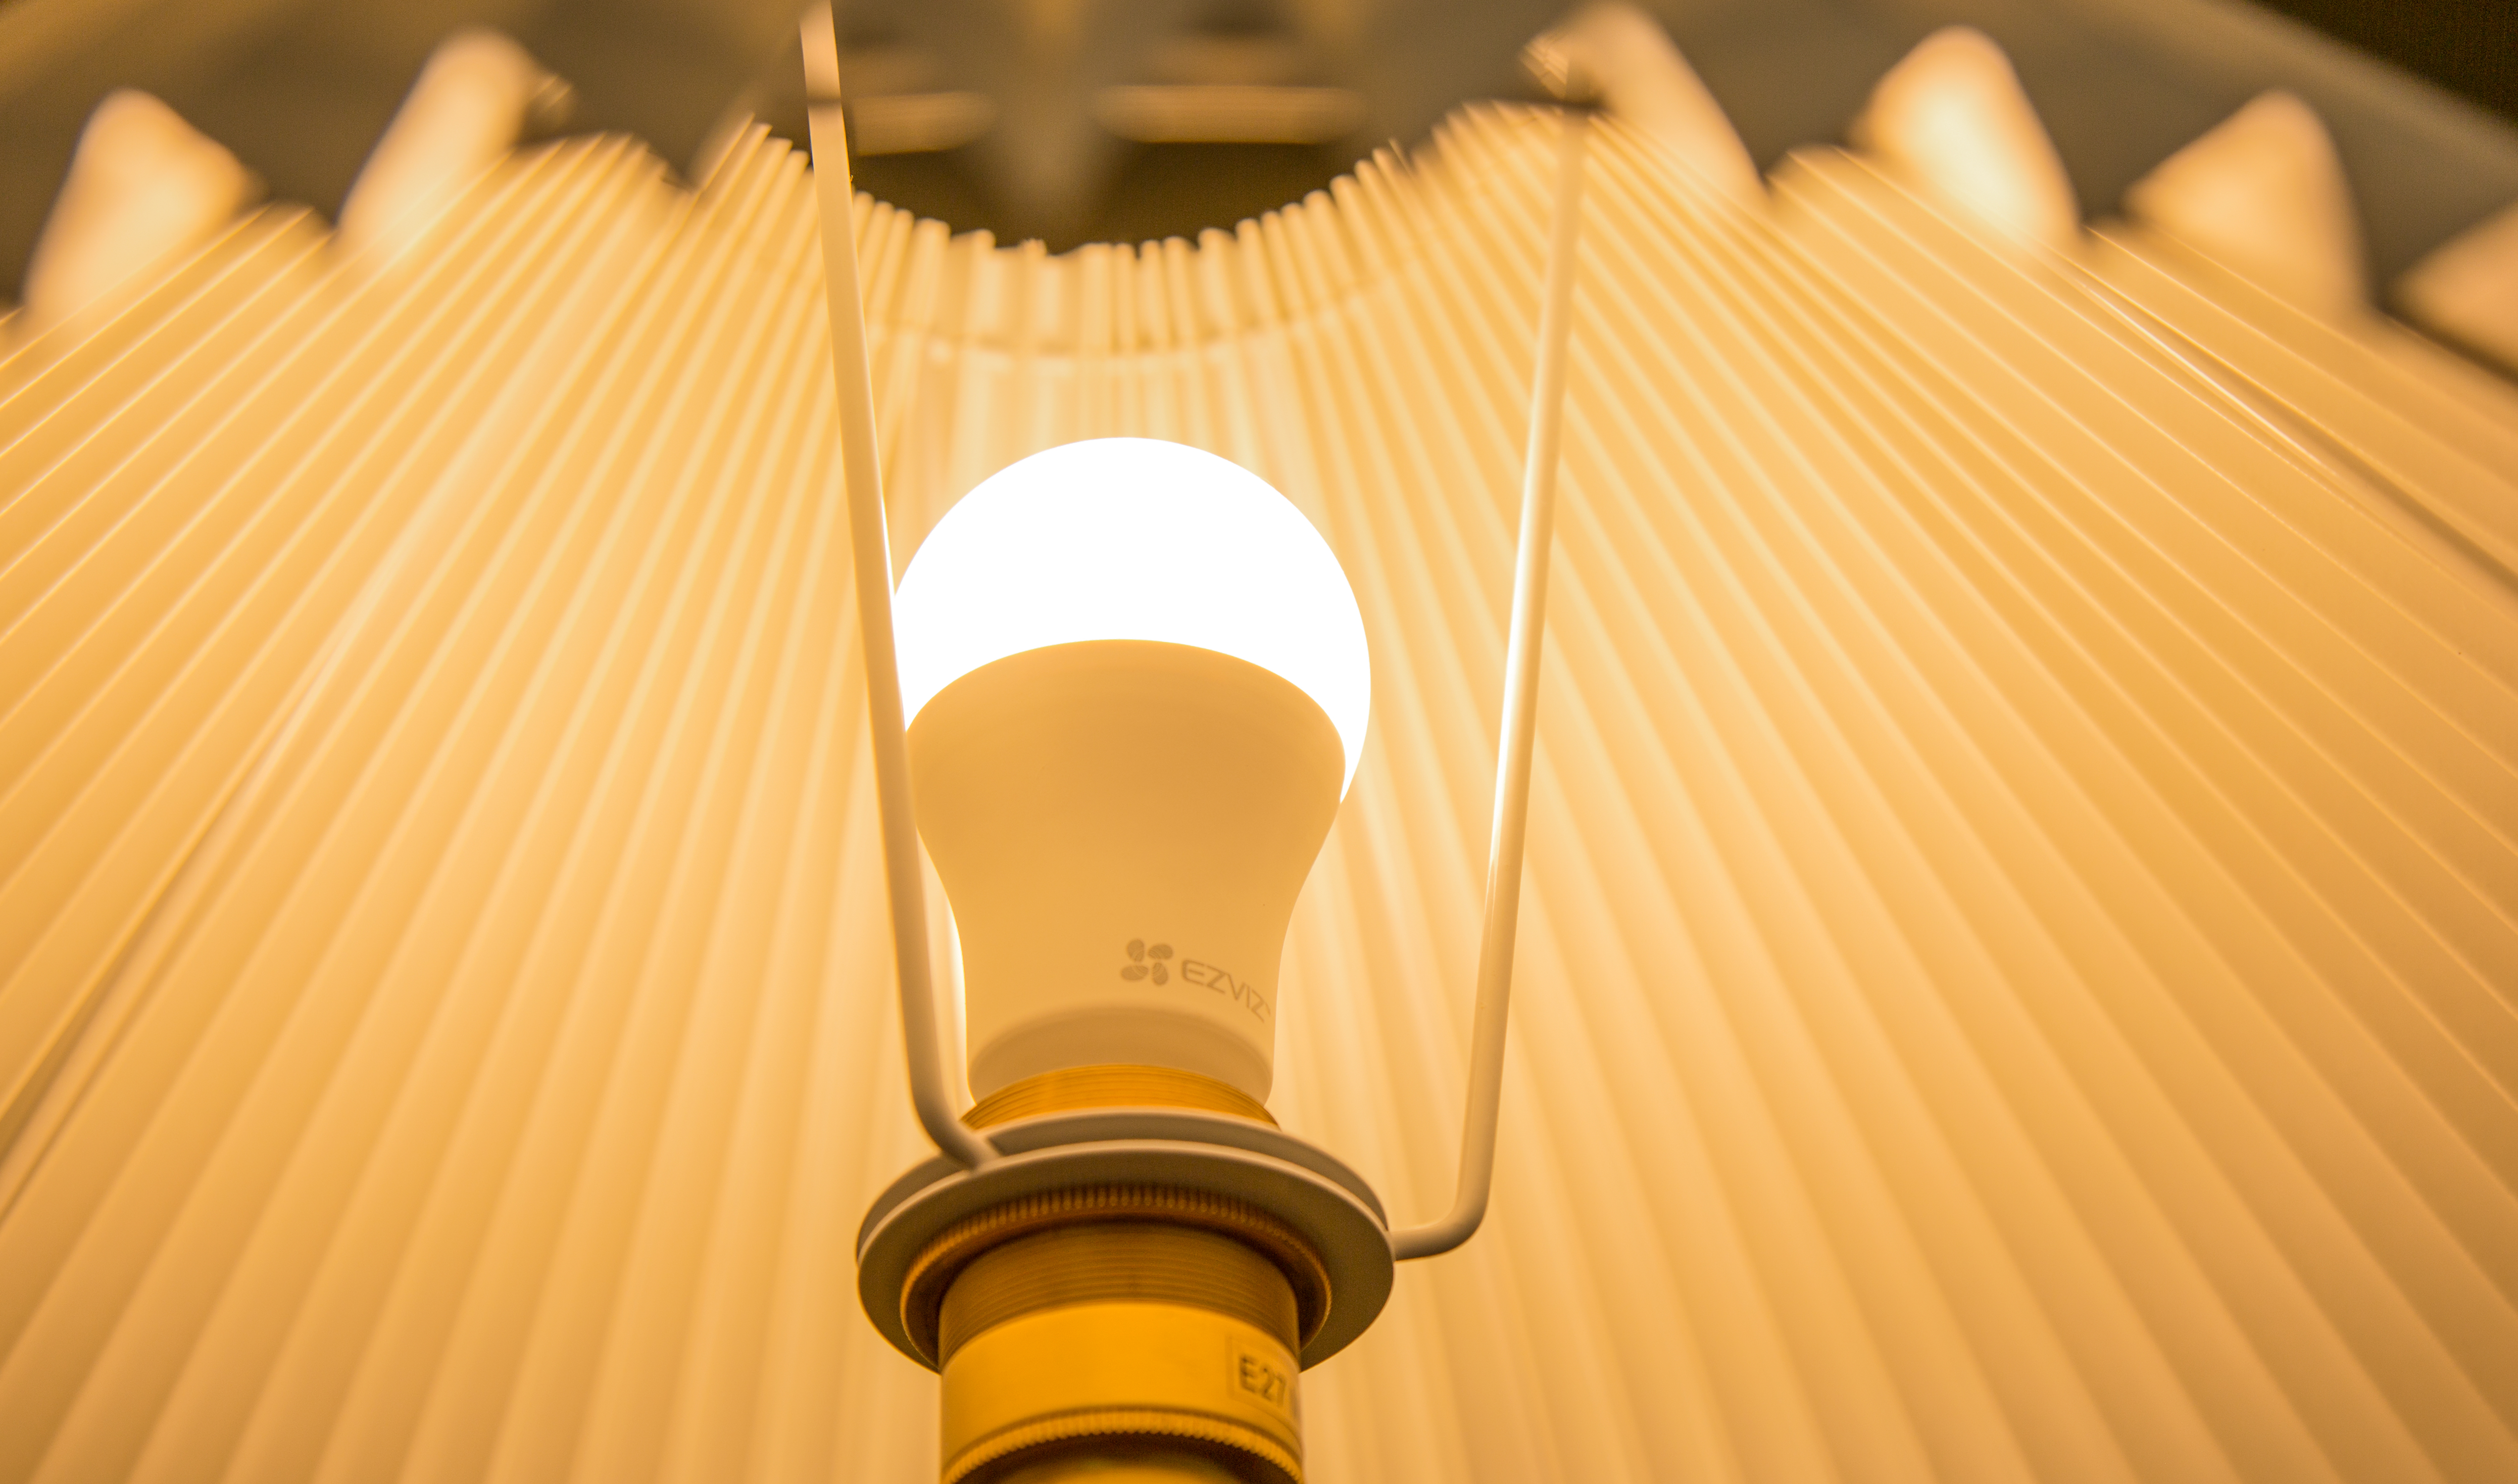 Bóng đèn thông minh Ezviz LB1 điều chỉnh độ sáng và nhiệt màu, Kết nối WI-FI, Điều Khiển Từ Xa Qua Ứng Dụng Di Động, Cài đặt lịch trình &amp; hẹn giờ, Tiết kiệm năng lượng